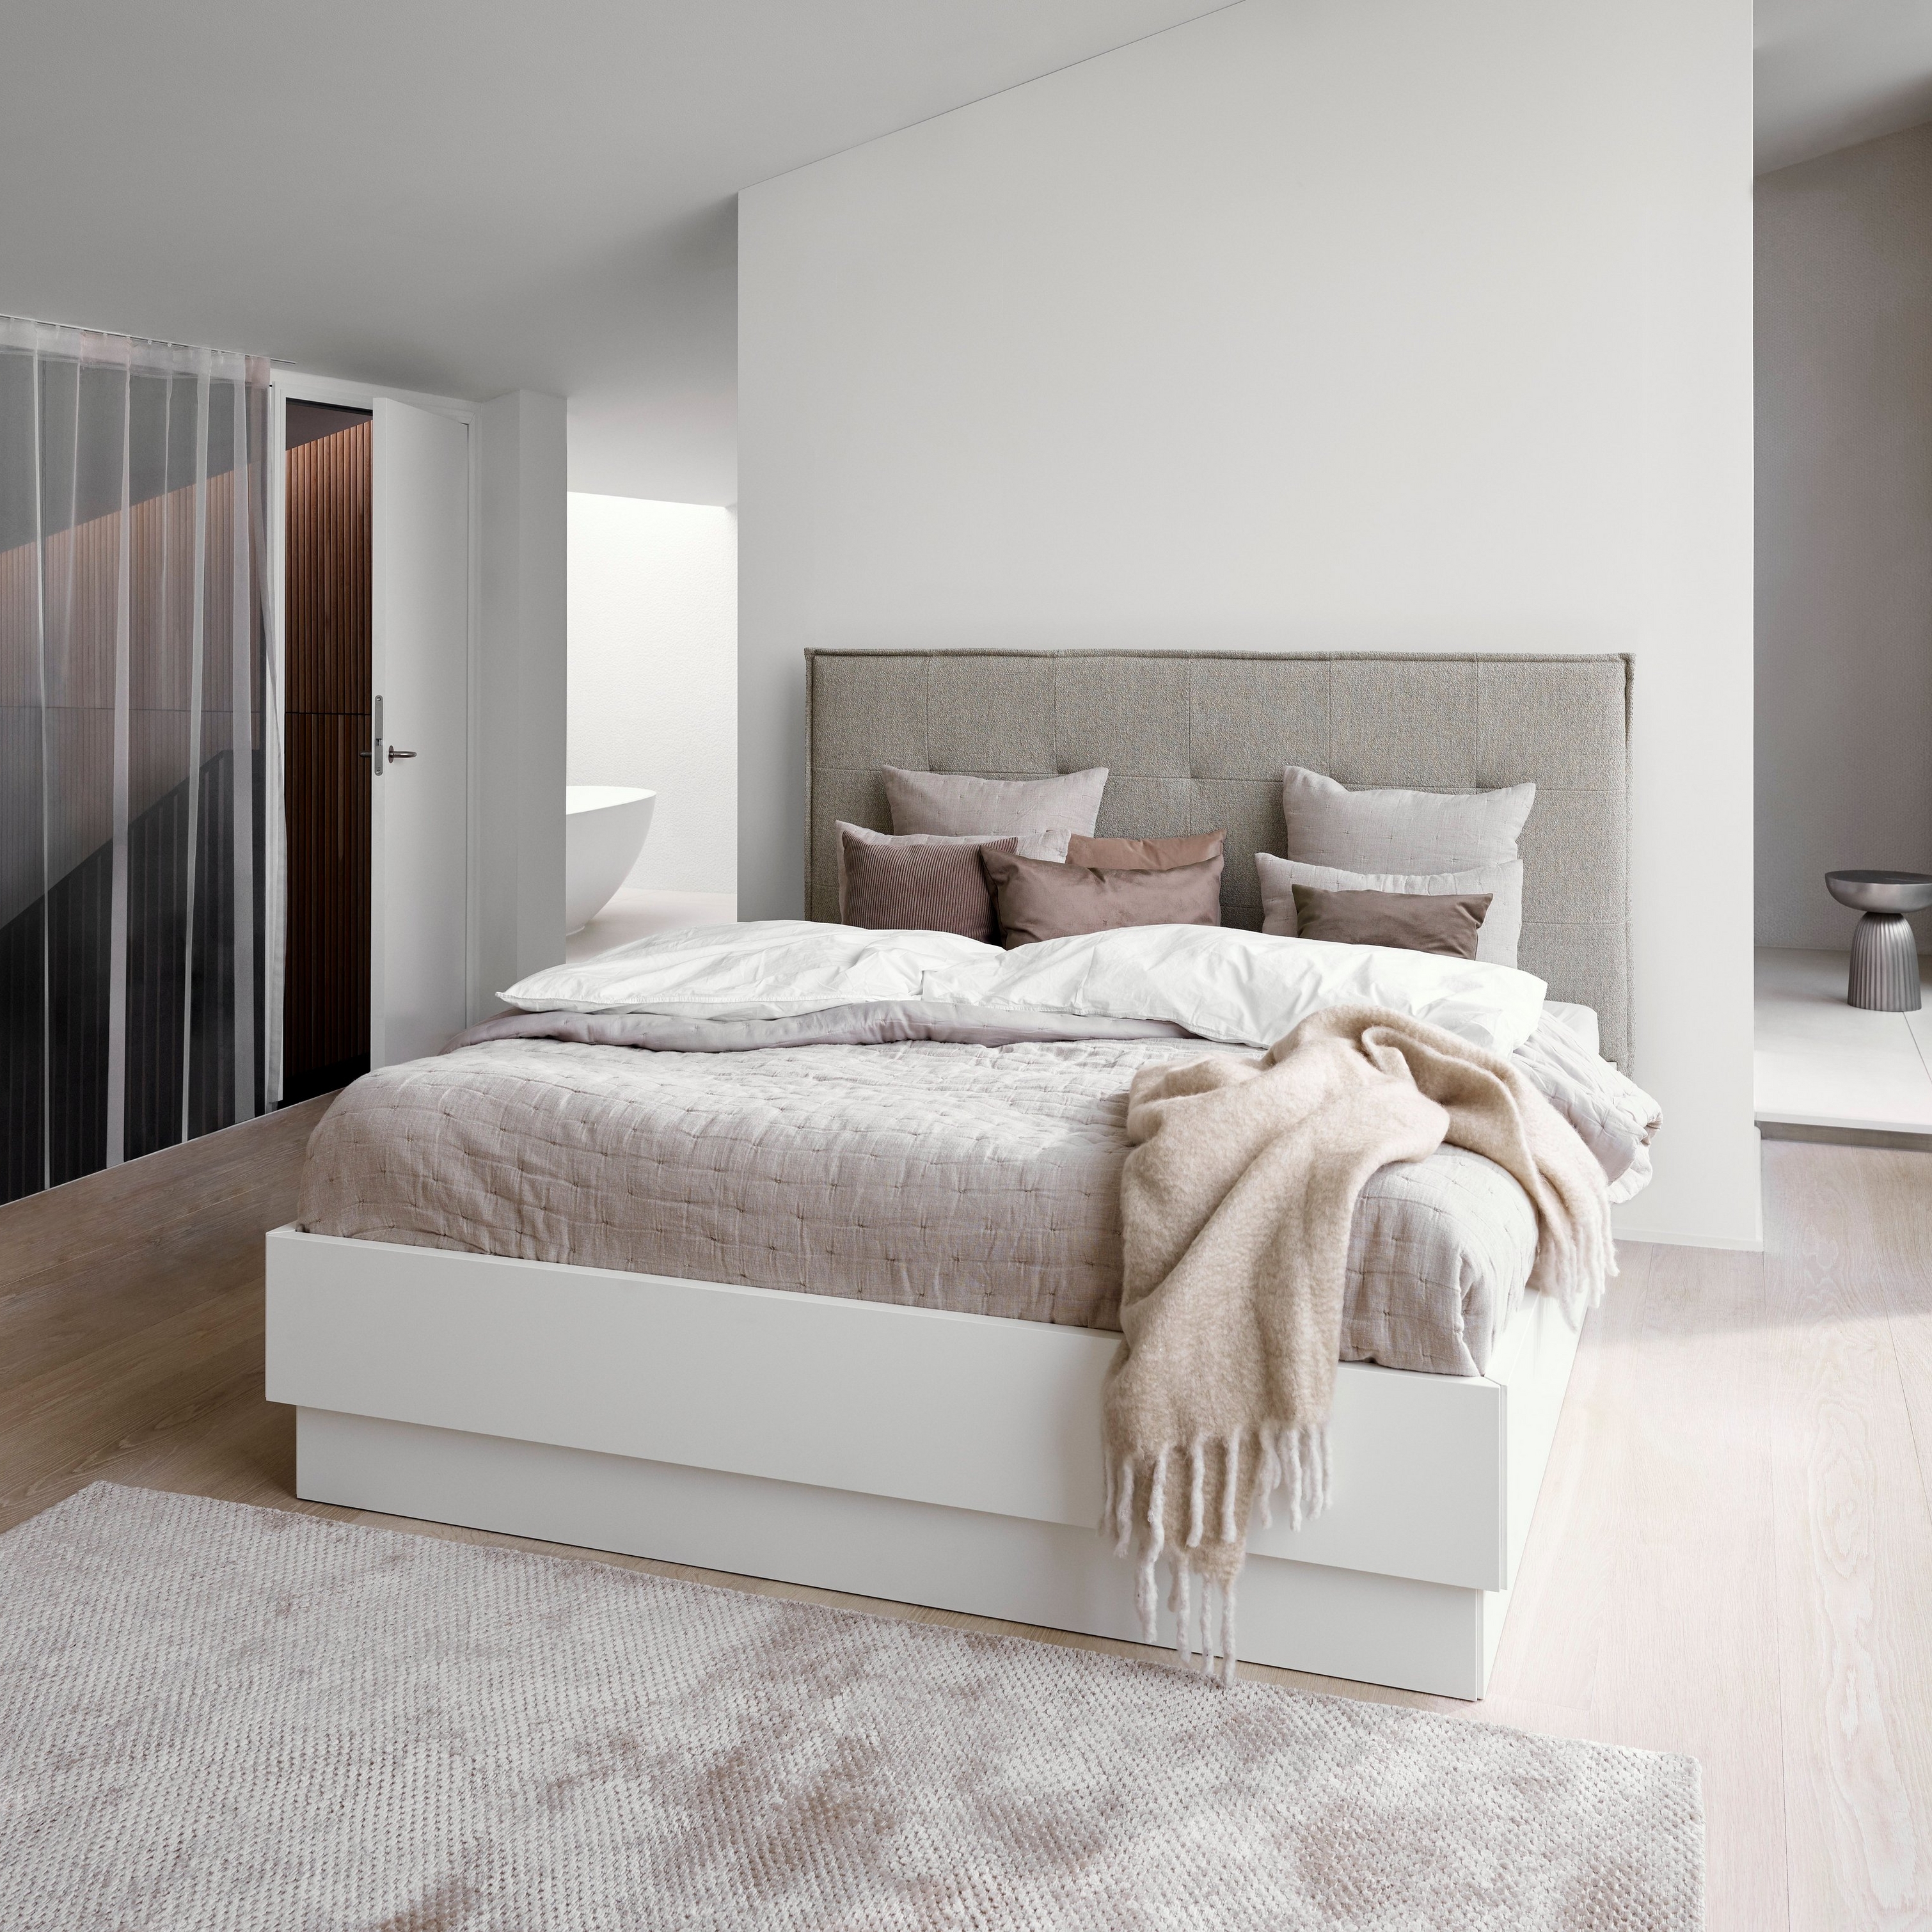 Minimalistische slaapkamer met een grijs gestoffeerd bed, wit linnengoed en een beige plaid met textuur.